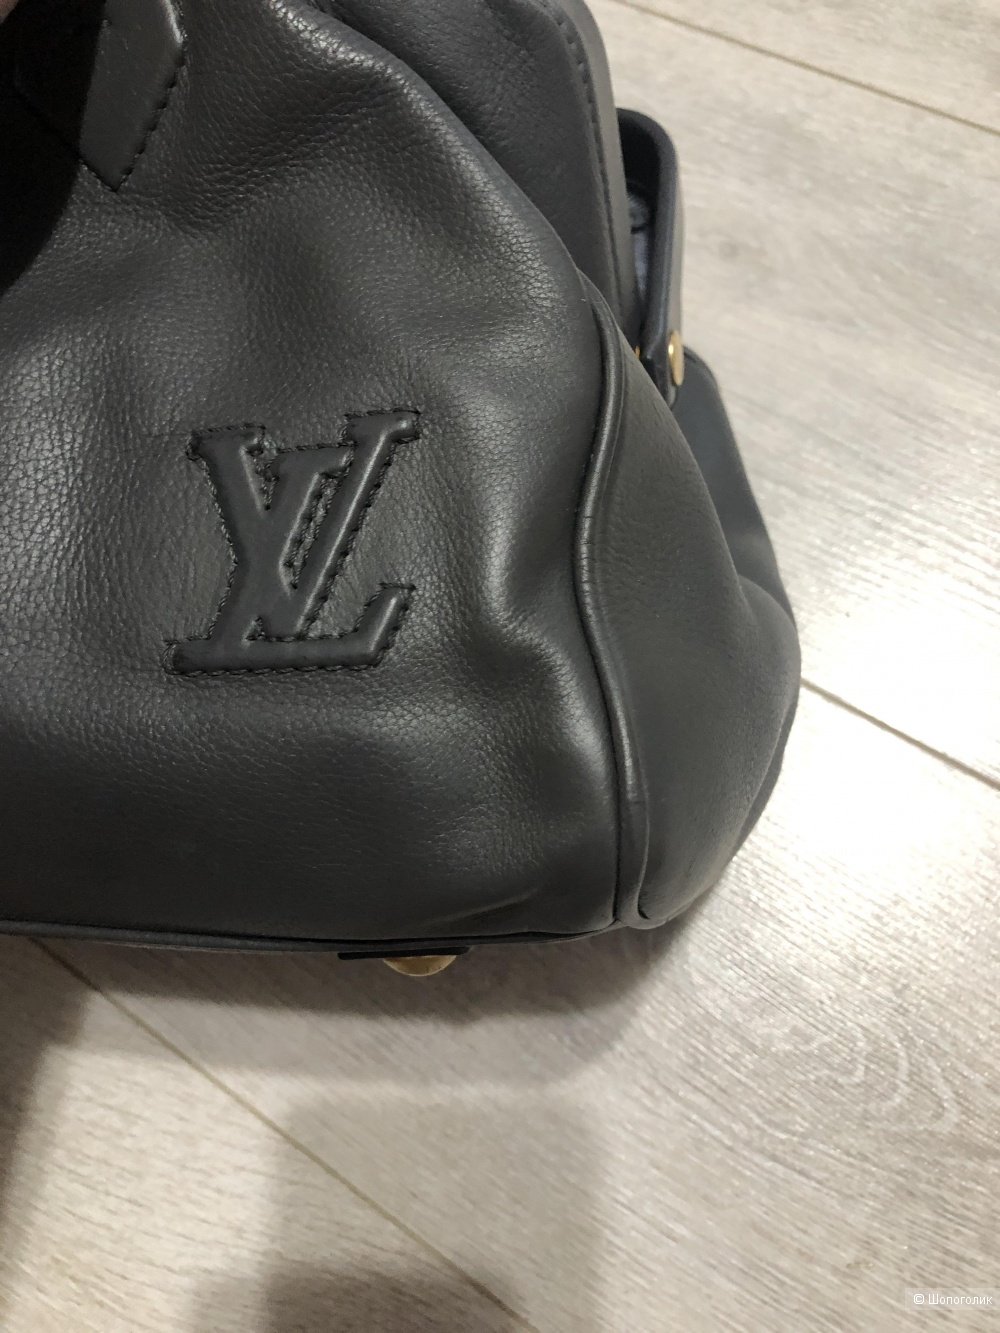 Сумка Louis Vuitton размер 30 на 20